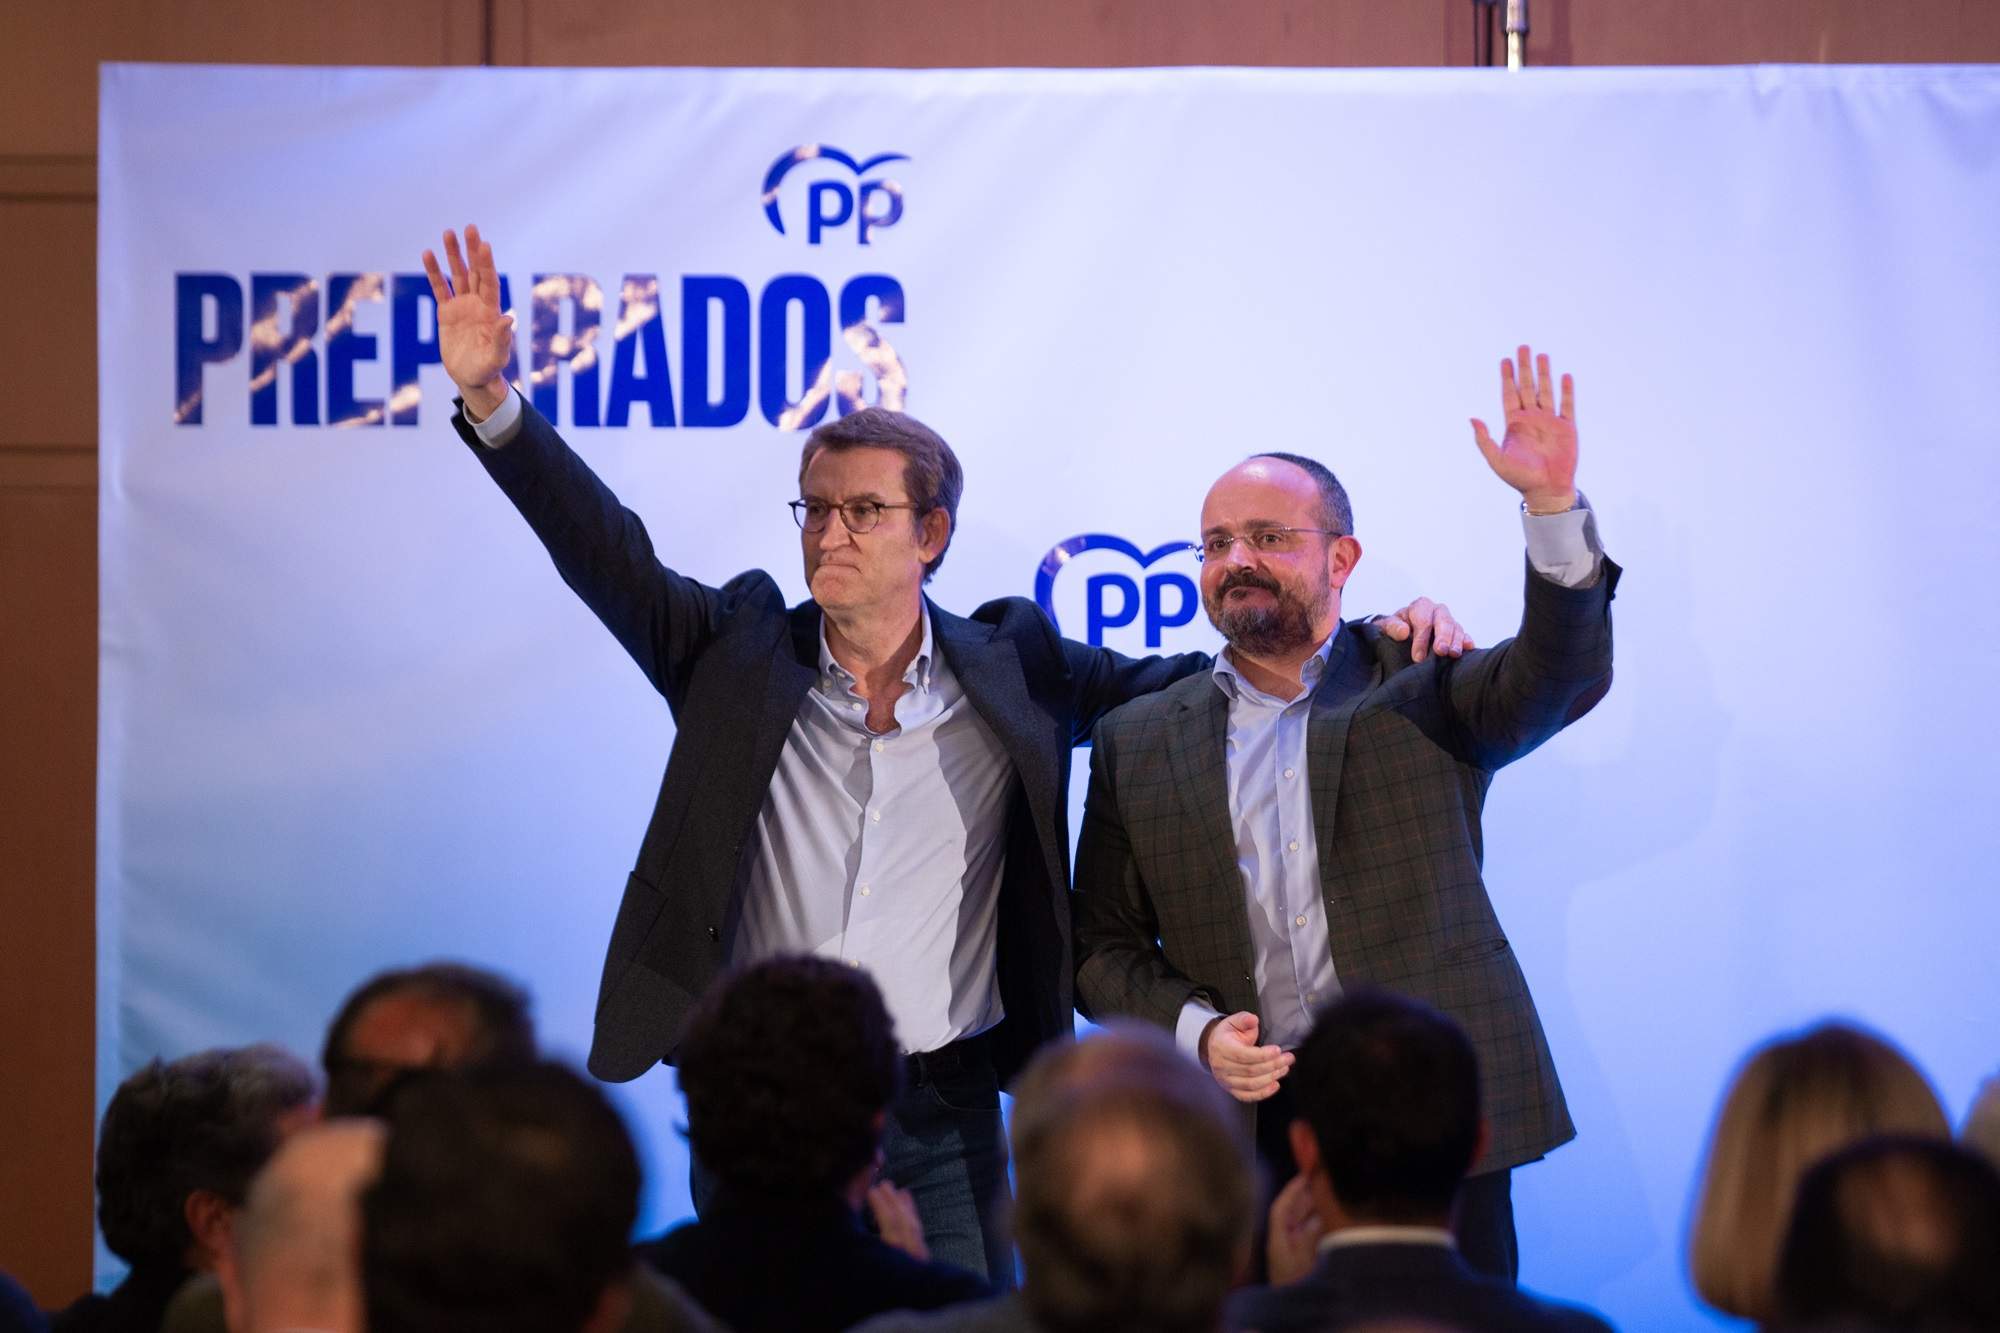 Feijóo confirma Alejandro Fernández com a candidat del PP a les eleccions catalanes del 12-M